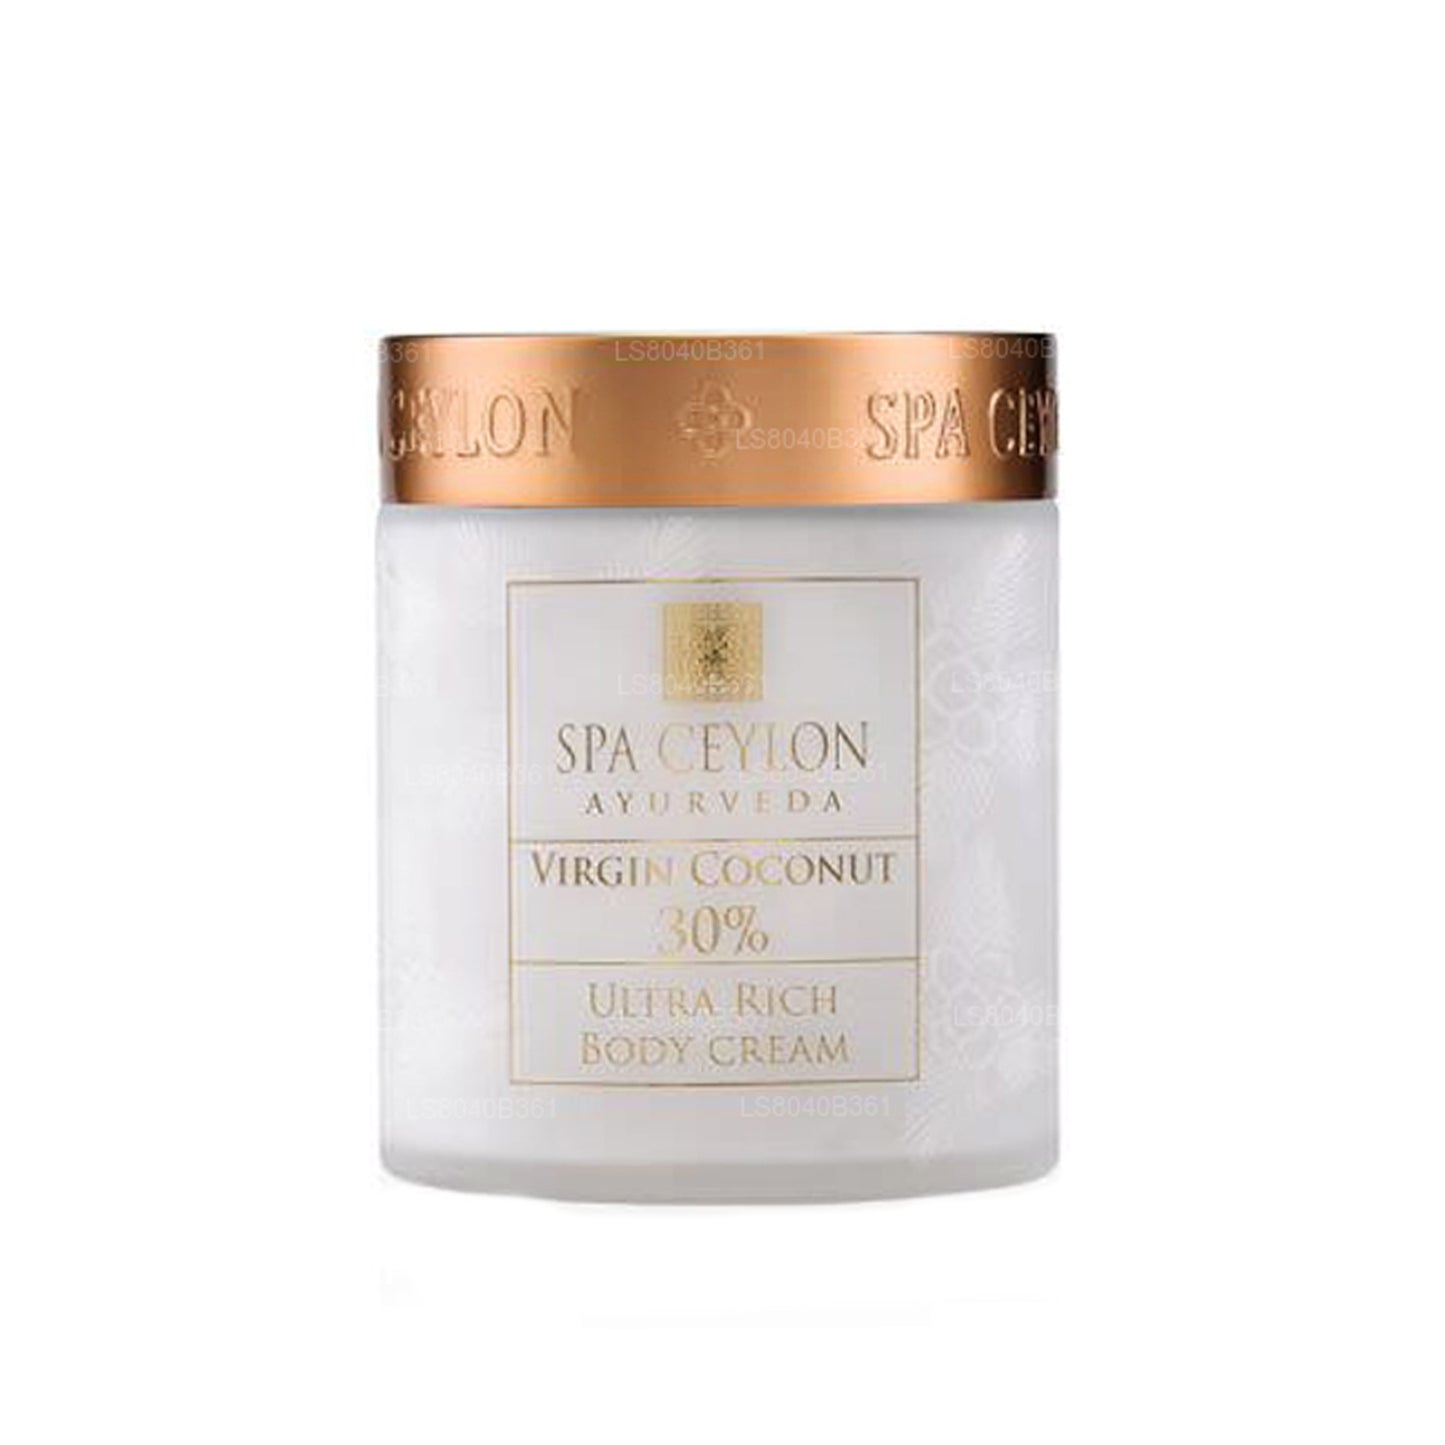 Spa Ceylon Virgin Coconut 30% - Crema corporal ultra rica (200 g)